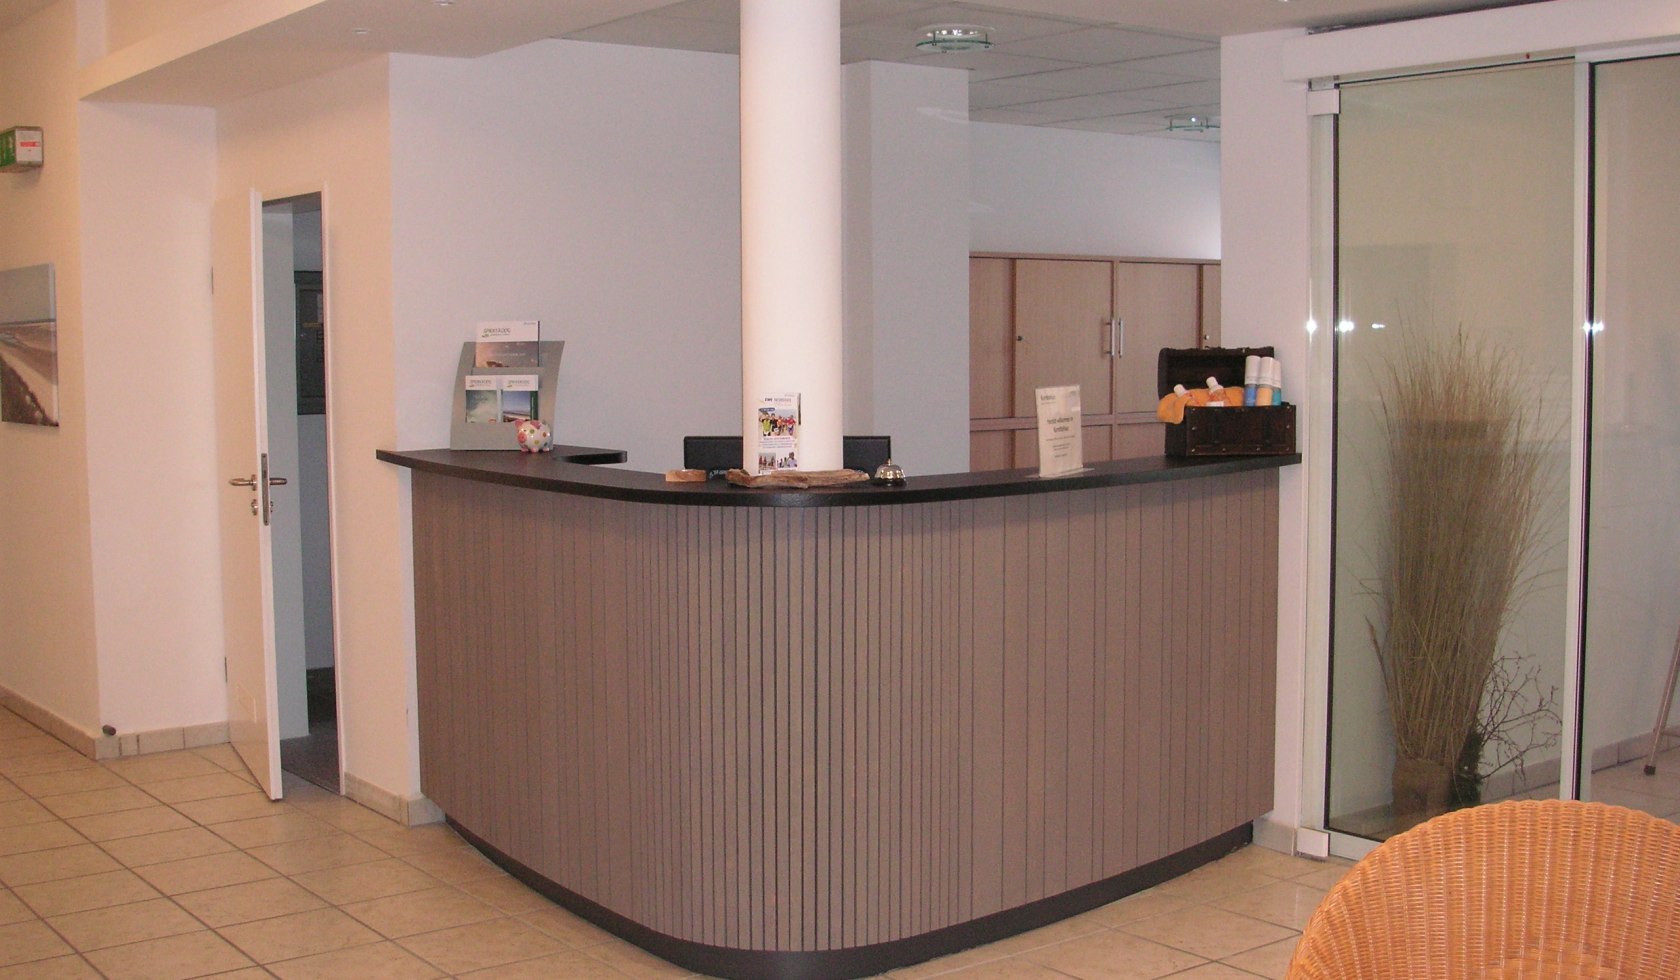 Anmeldungsbereich des Kurmittelhauses mit Tresen, © Nordseebad Spiekeroog GmbH / Iris Schmidt